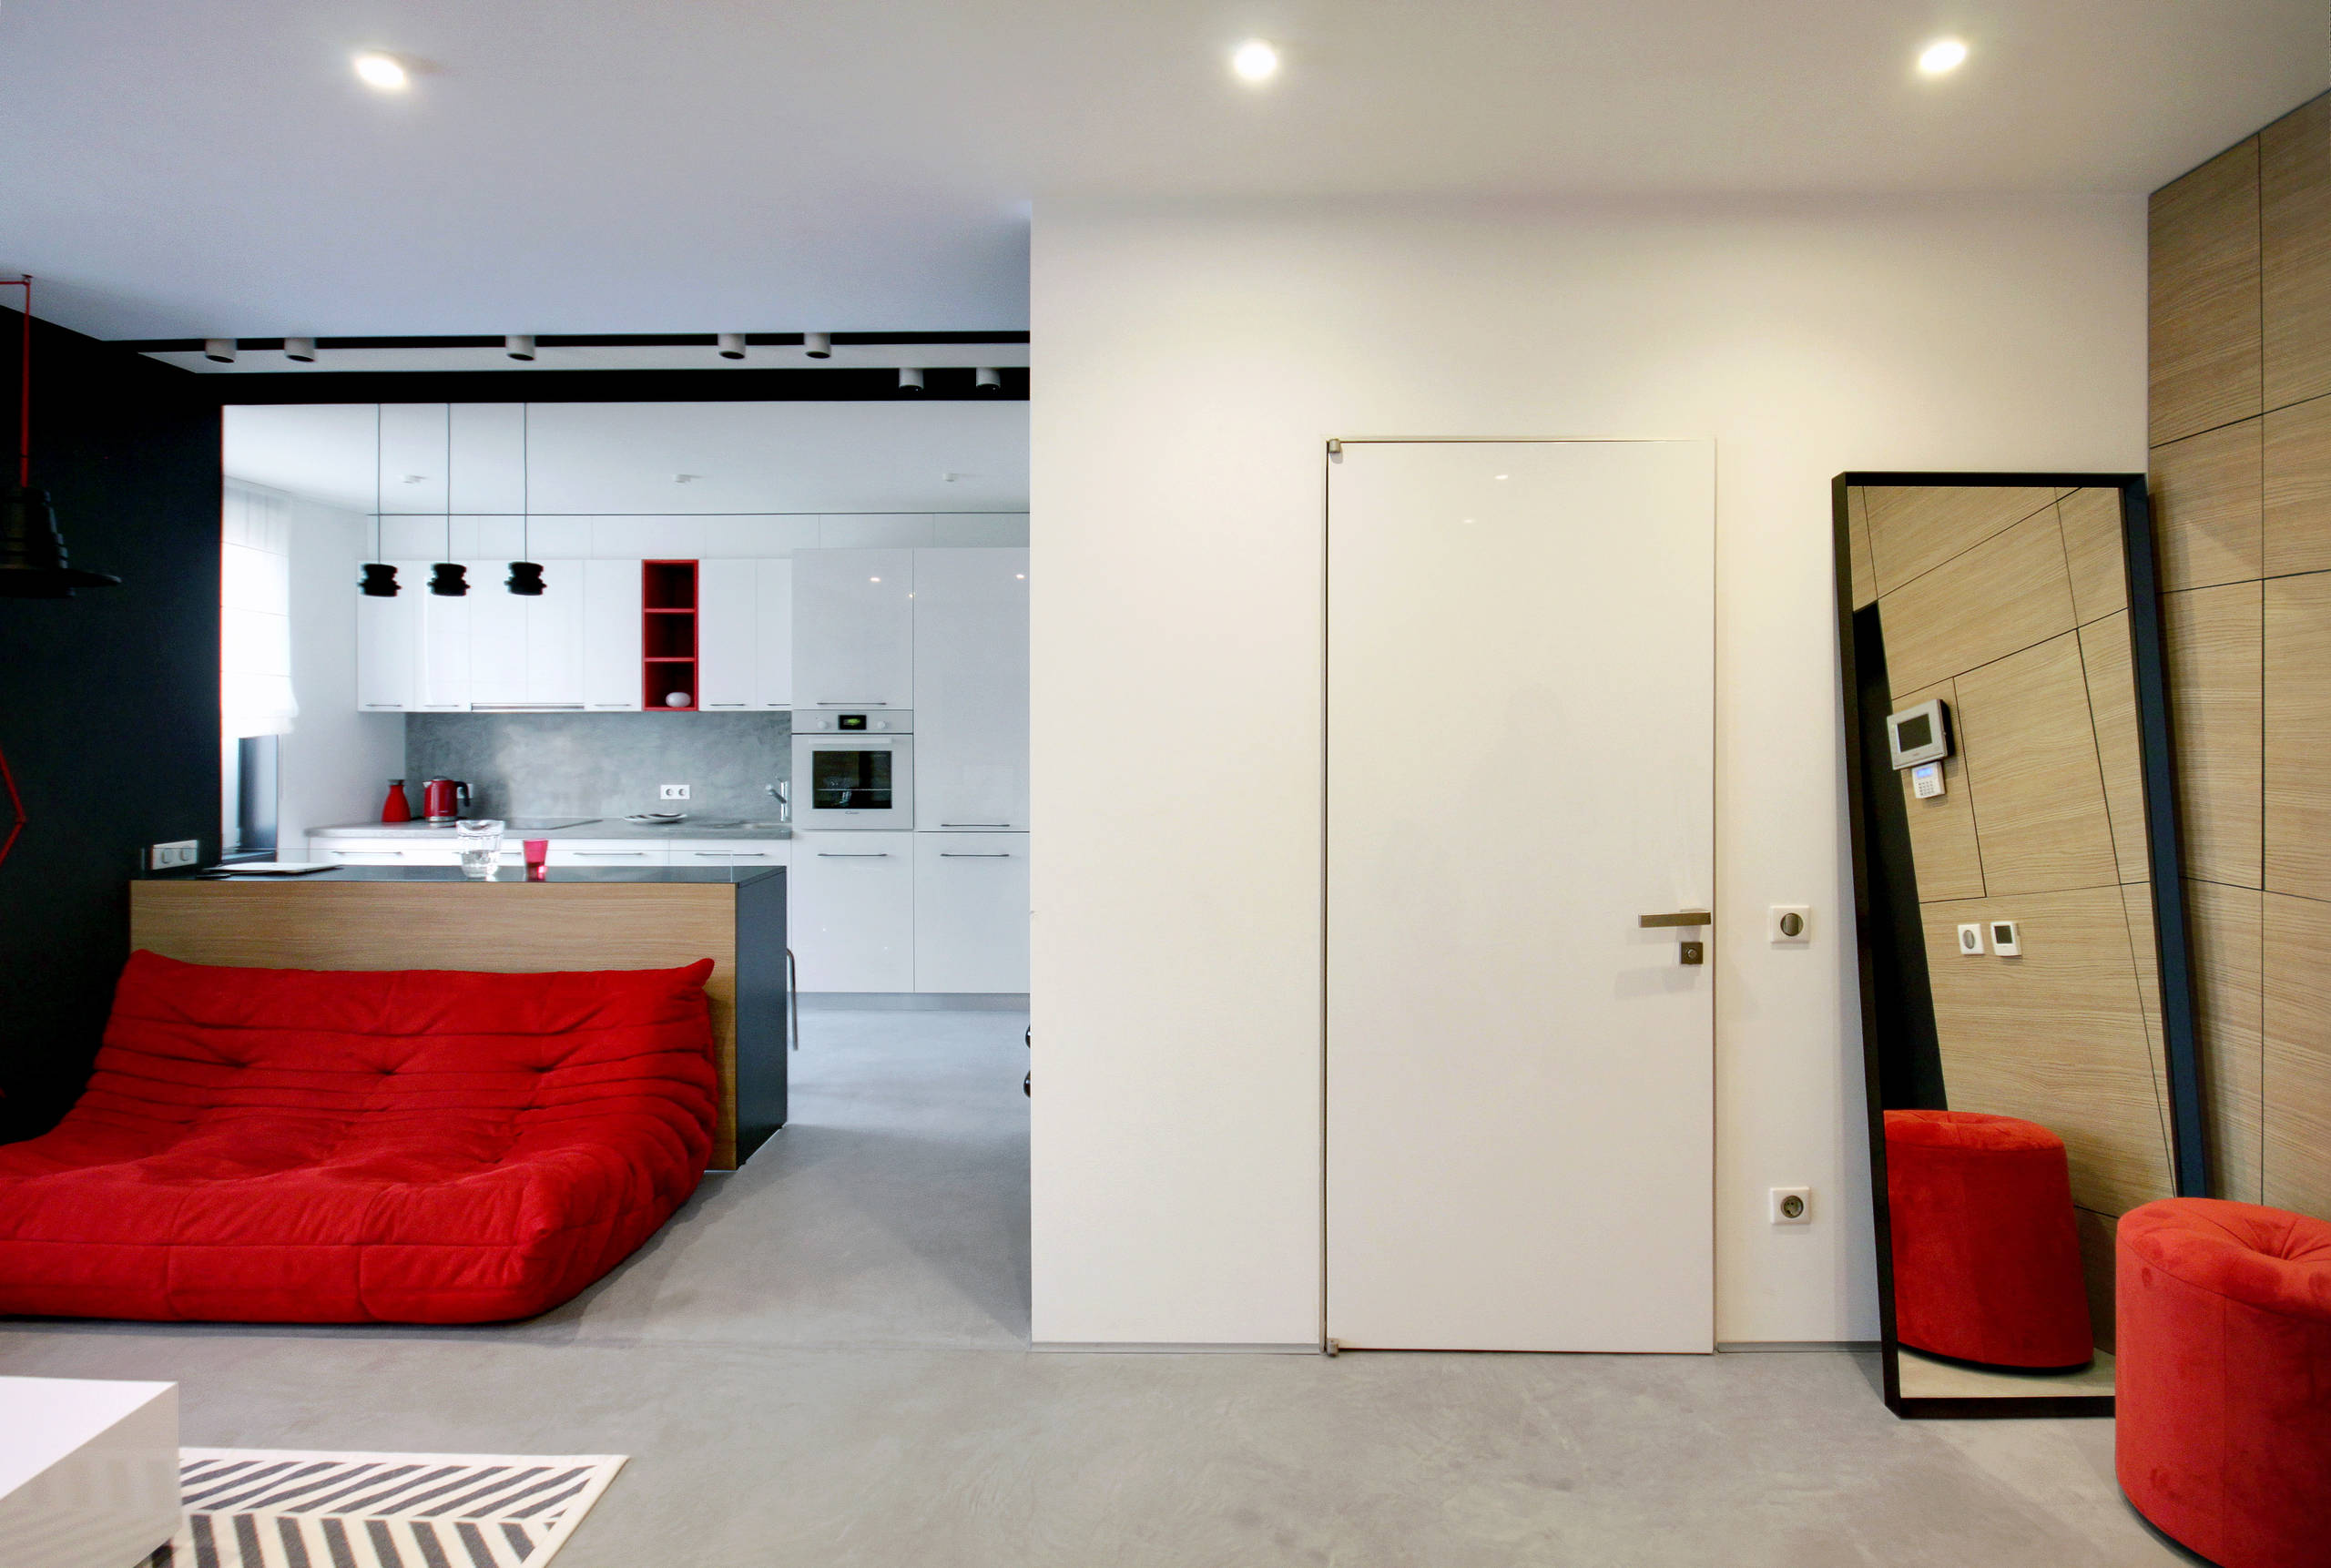 Дизайн кухни-гостиной 15 кв.м. − идеи и фото